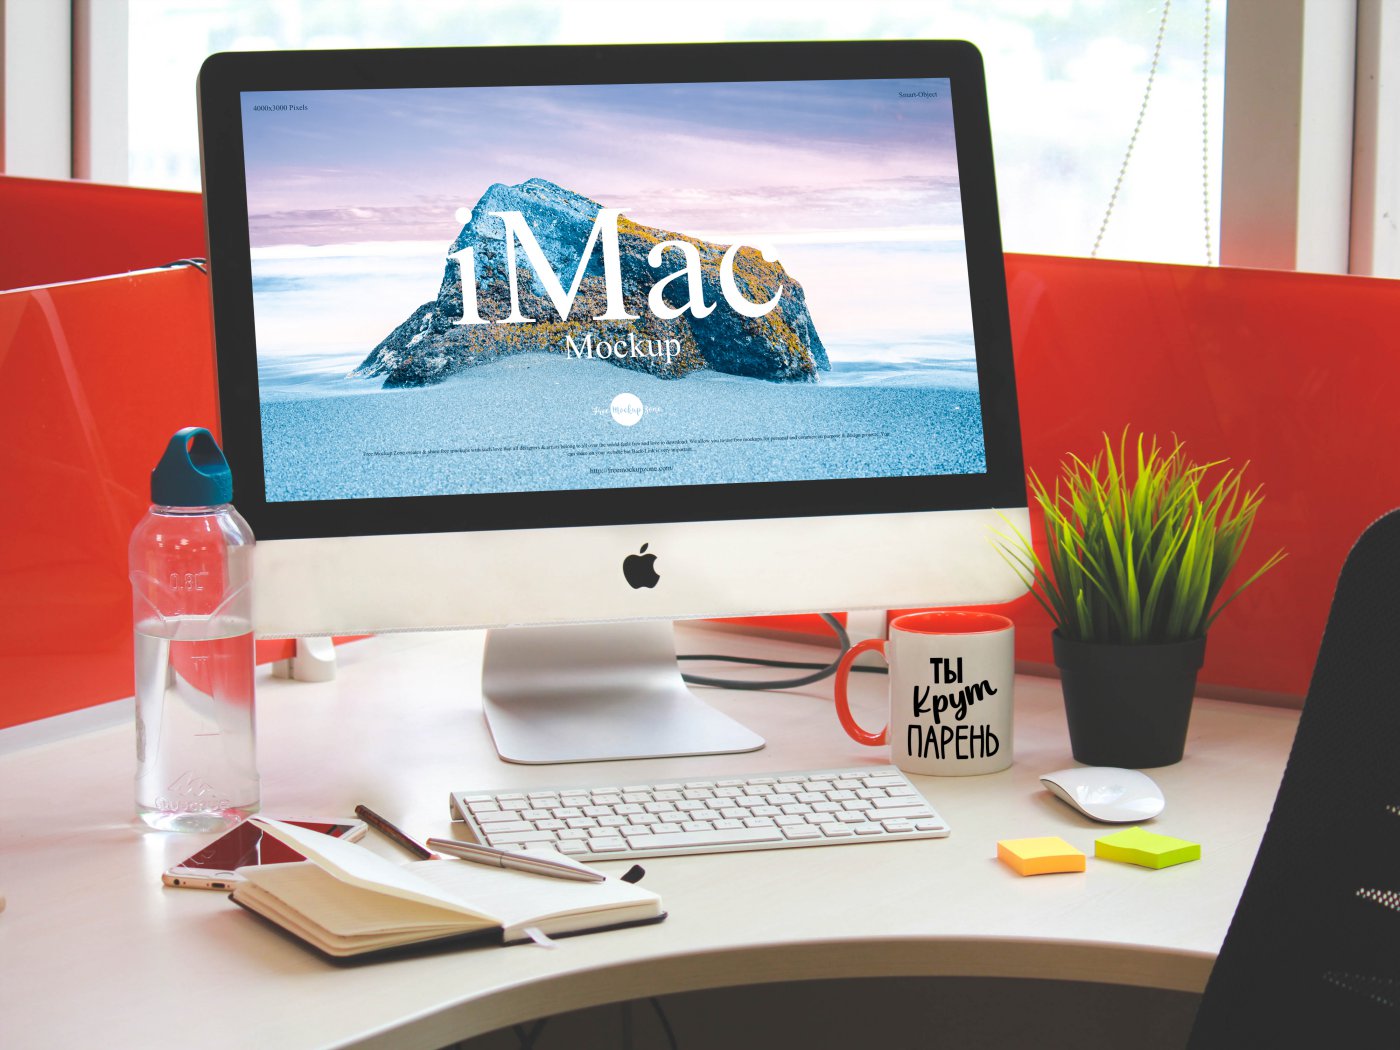 Free Designer Workstation iMac Mockup